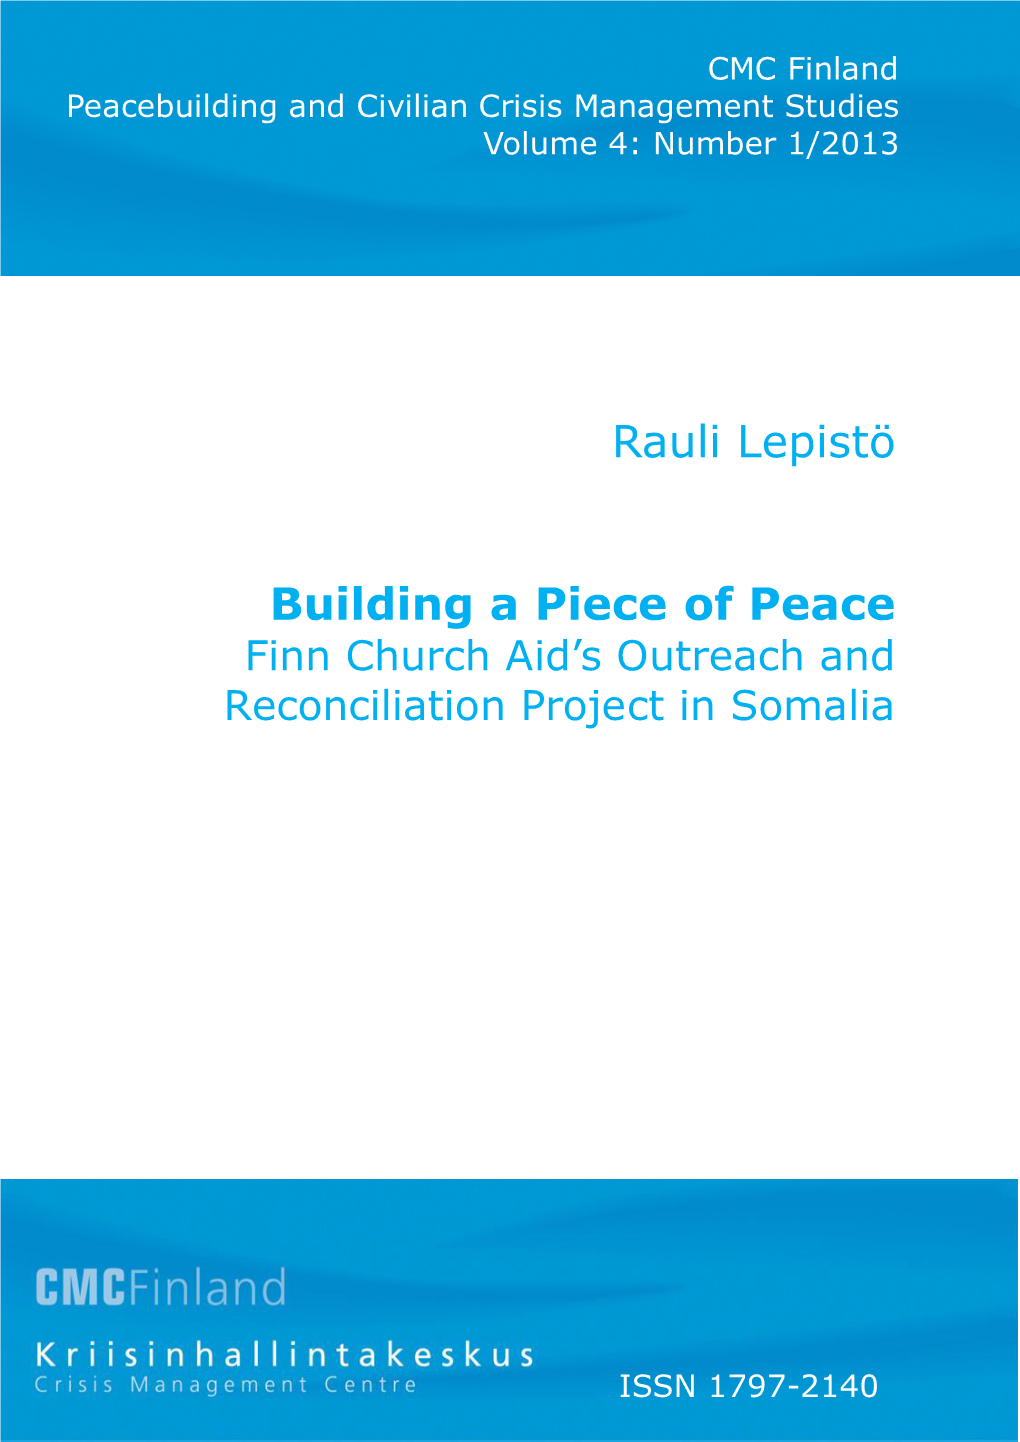 Rauli Lepistö Building a Piece of Peace